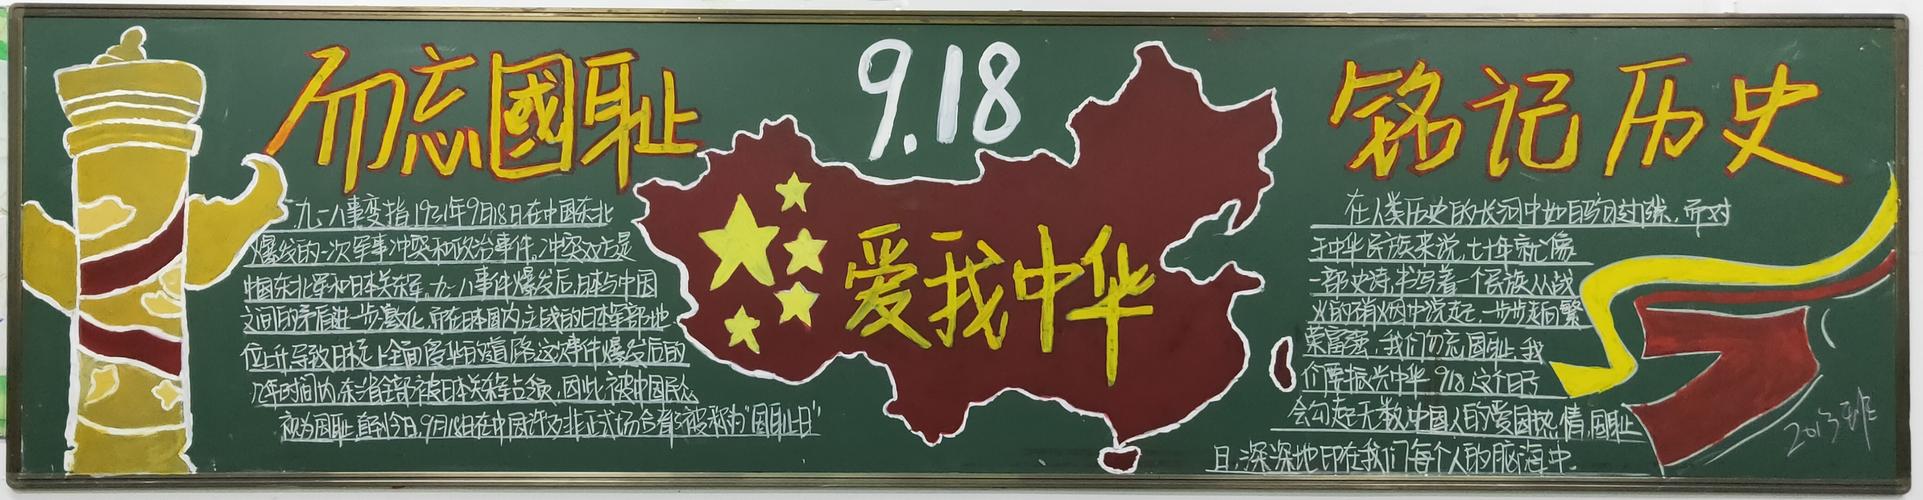 我中华主题黑板报评比结果 写美篇 当代中职生的青春活力和热爱祖国